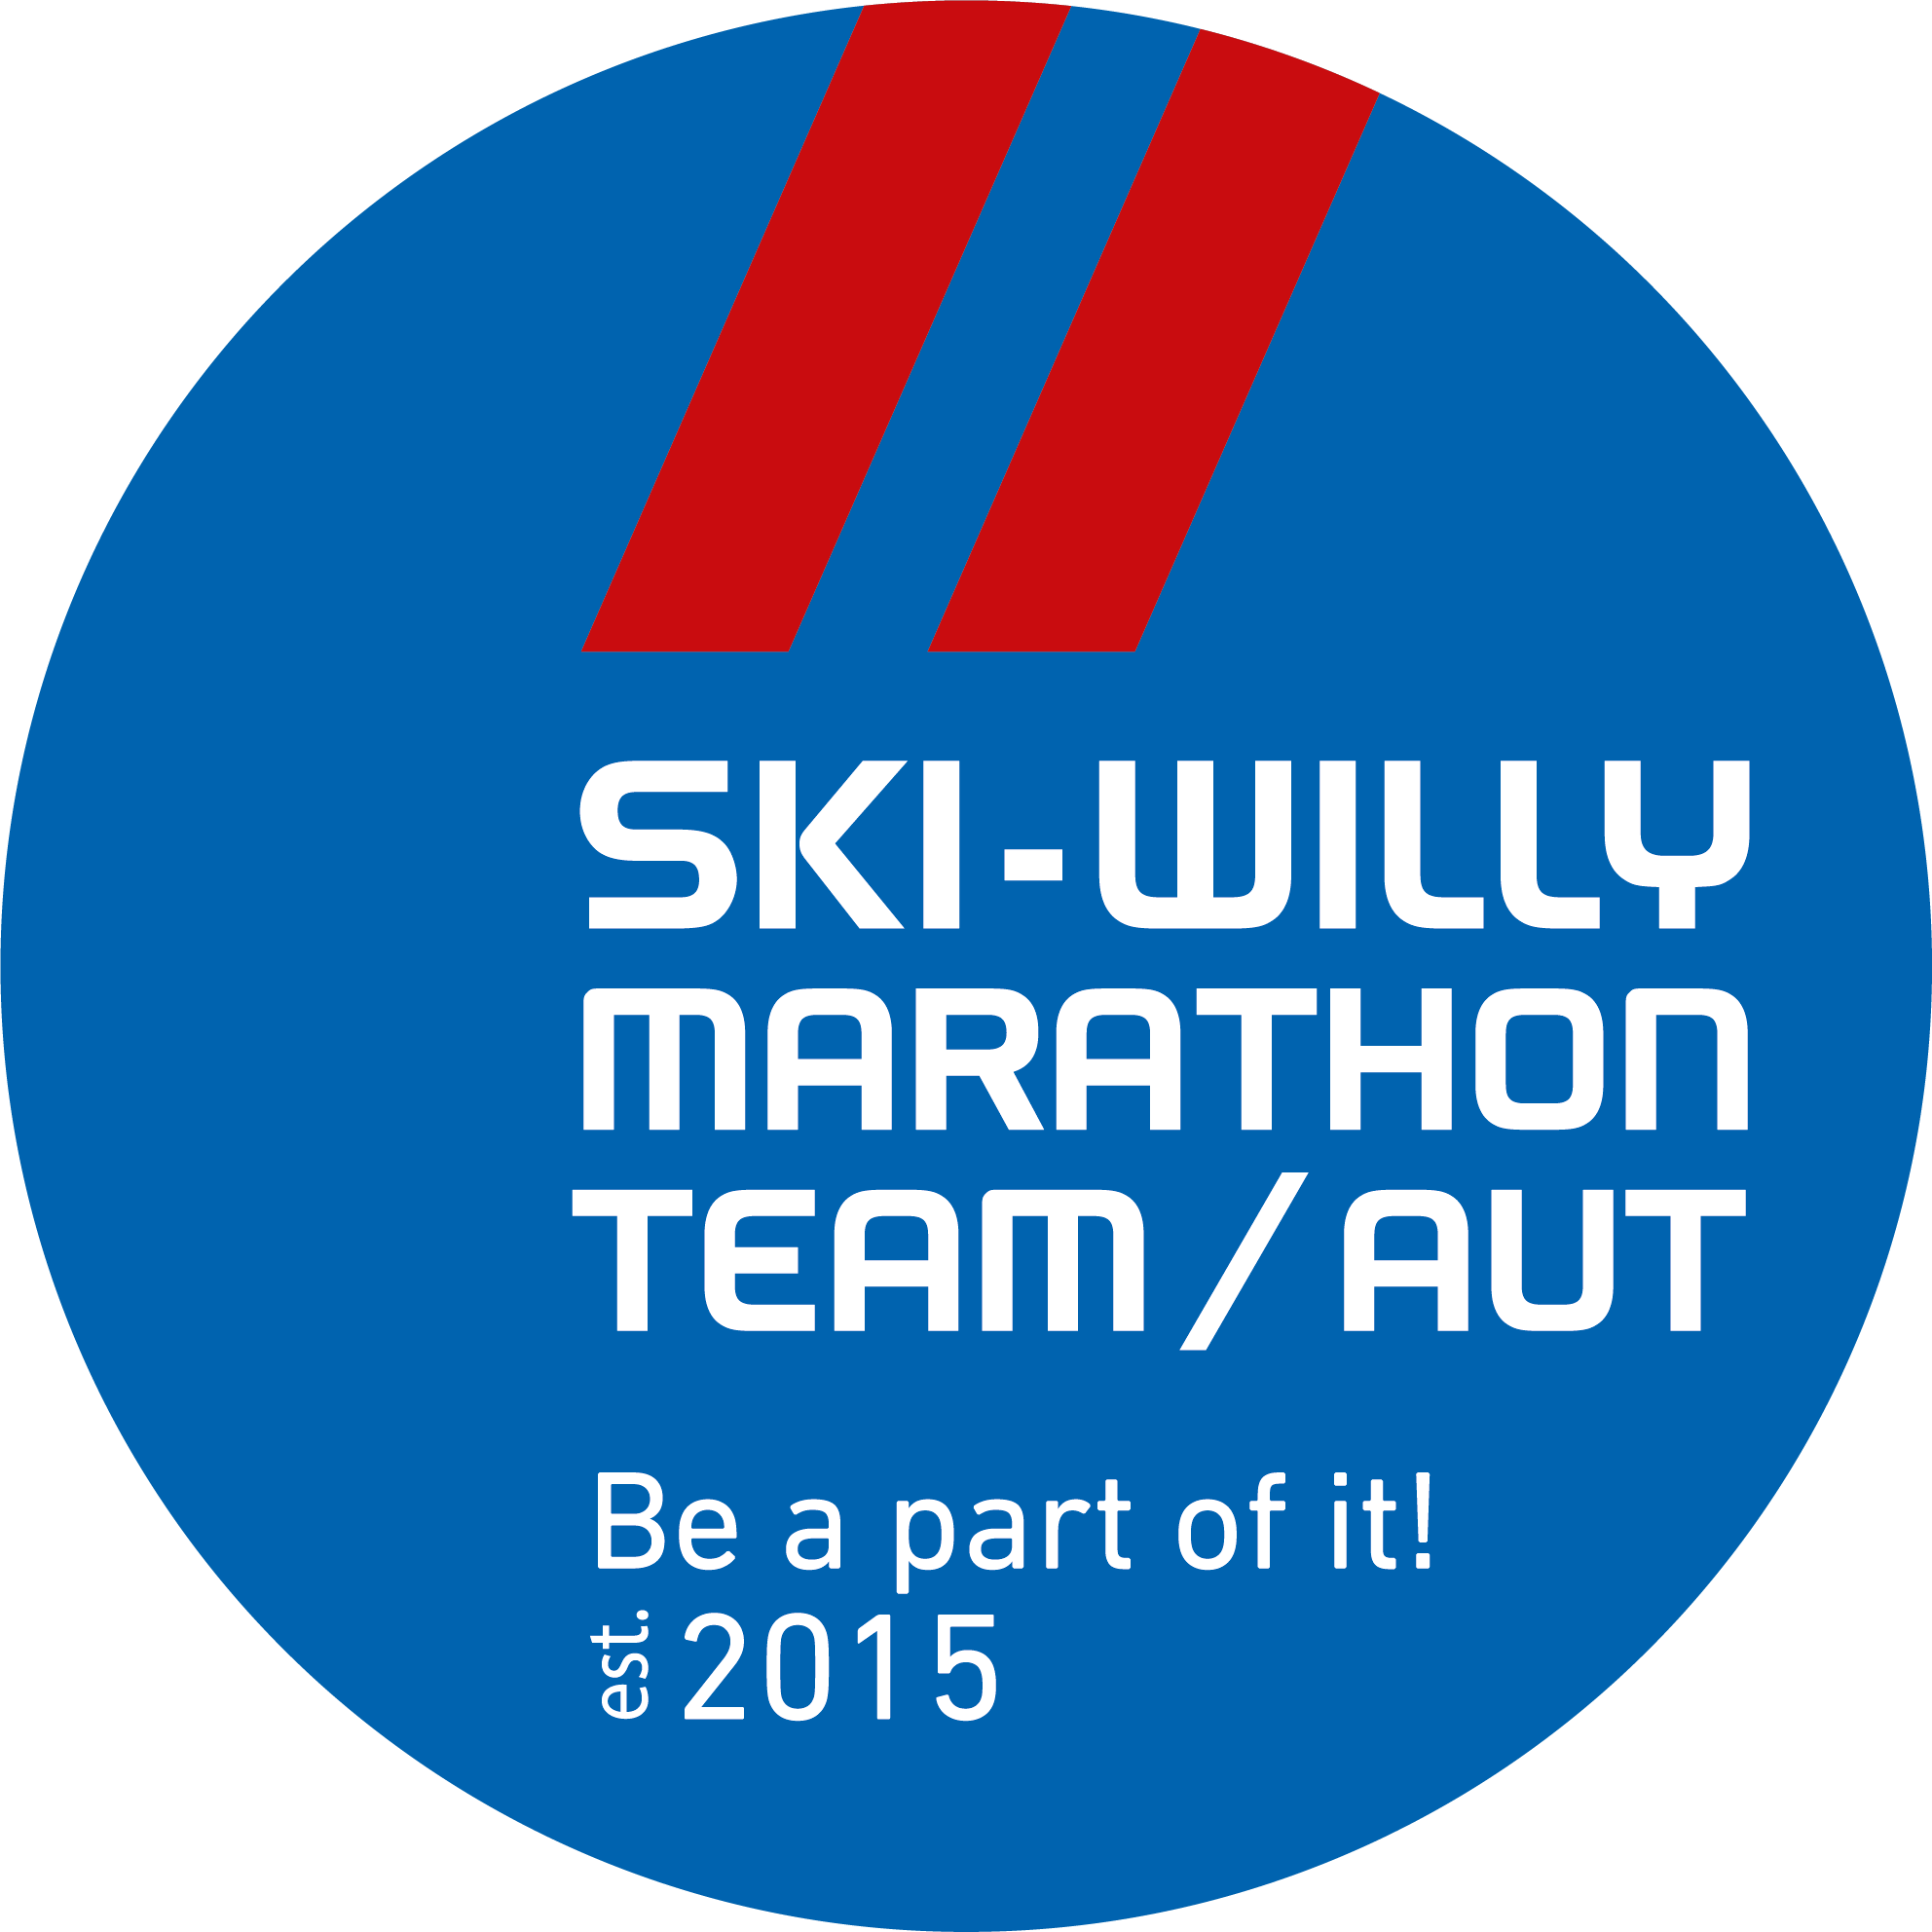 Ski-Willy Marathon Team Austria logo